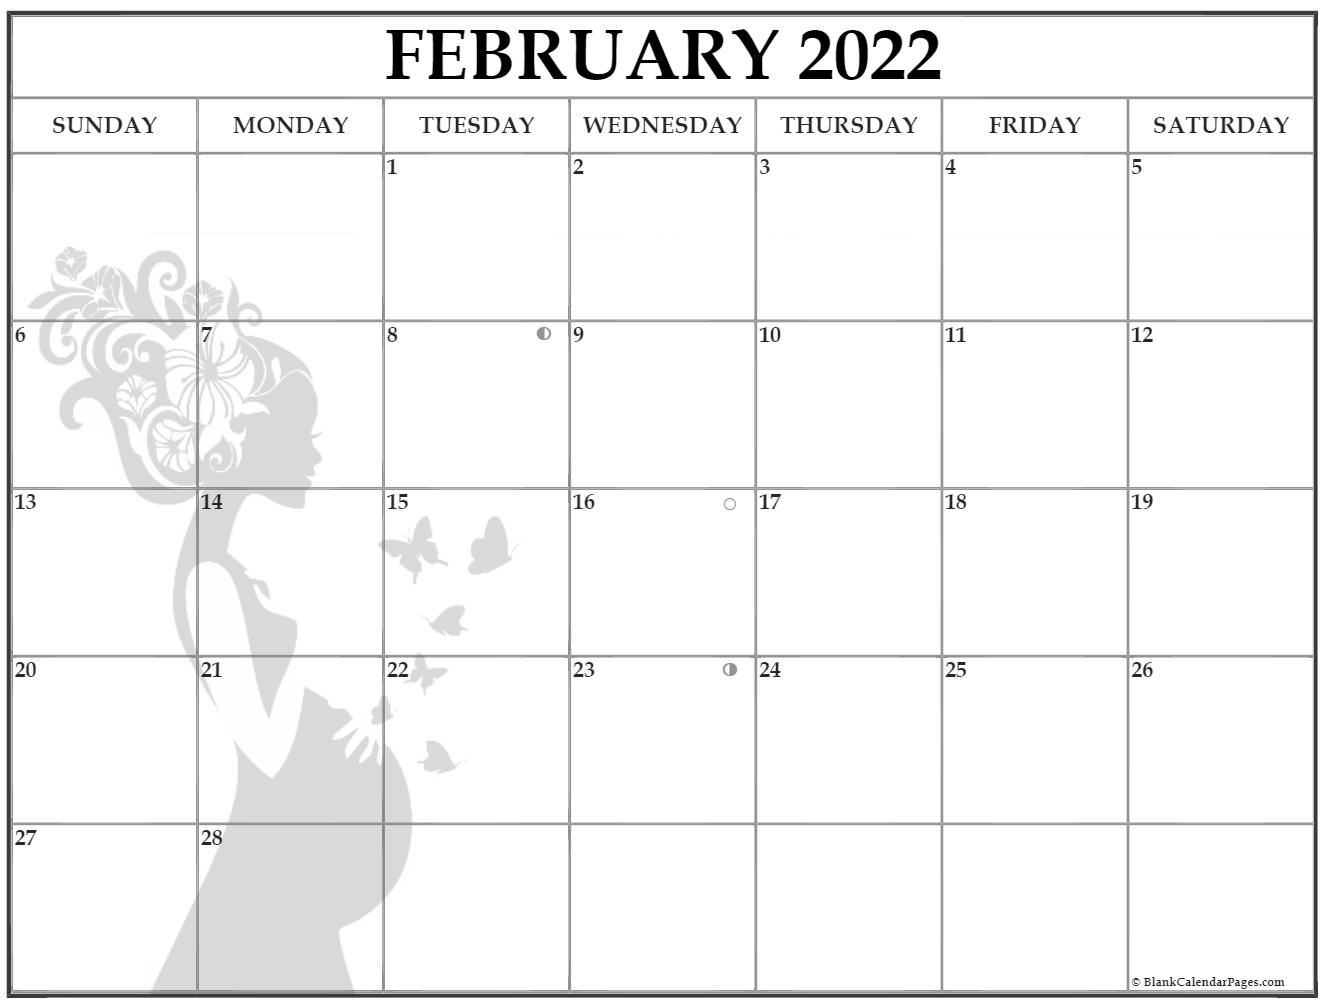 Get February 2022 Calendar Events